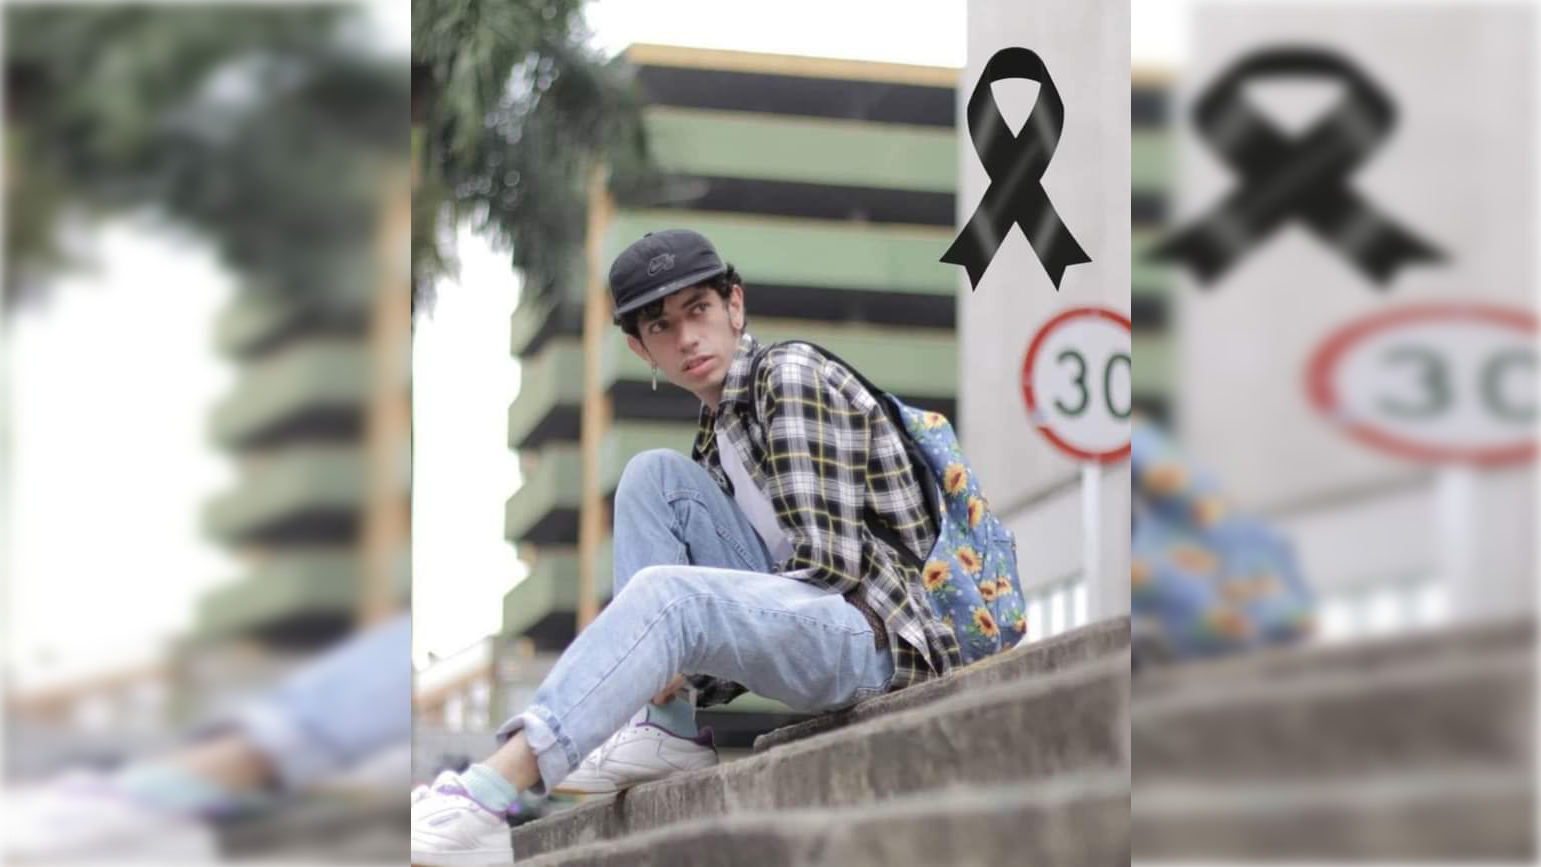 Apareció muerto el joven reportado como desaparecido en Palmira, ¡trabajaba como fotógrafo en la Alcaldía! | Noticias de Buenaventura, Colombia y el Mundo